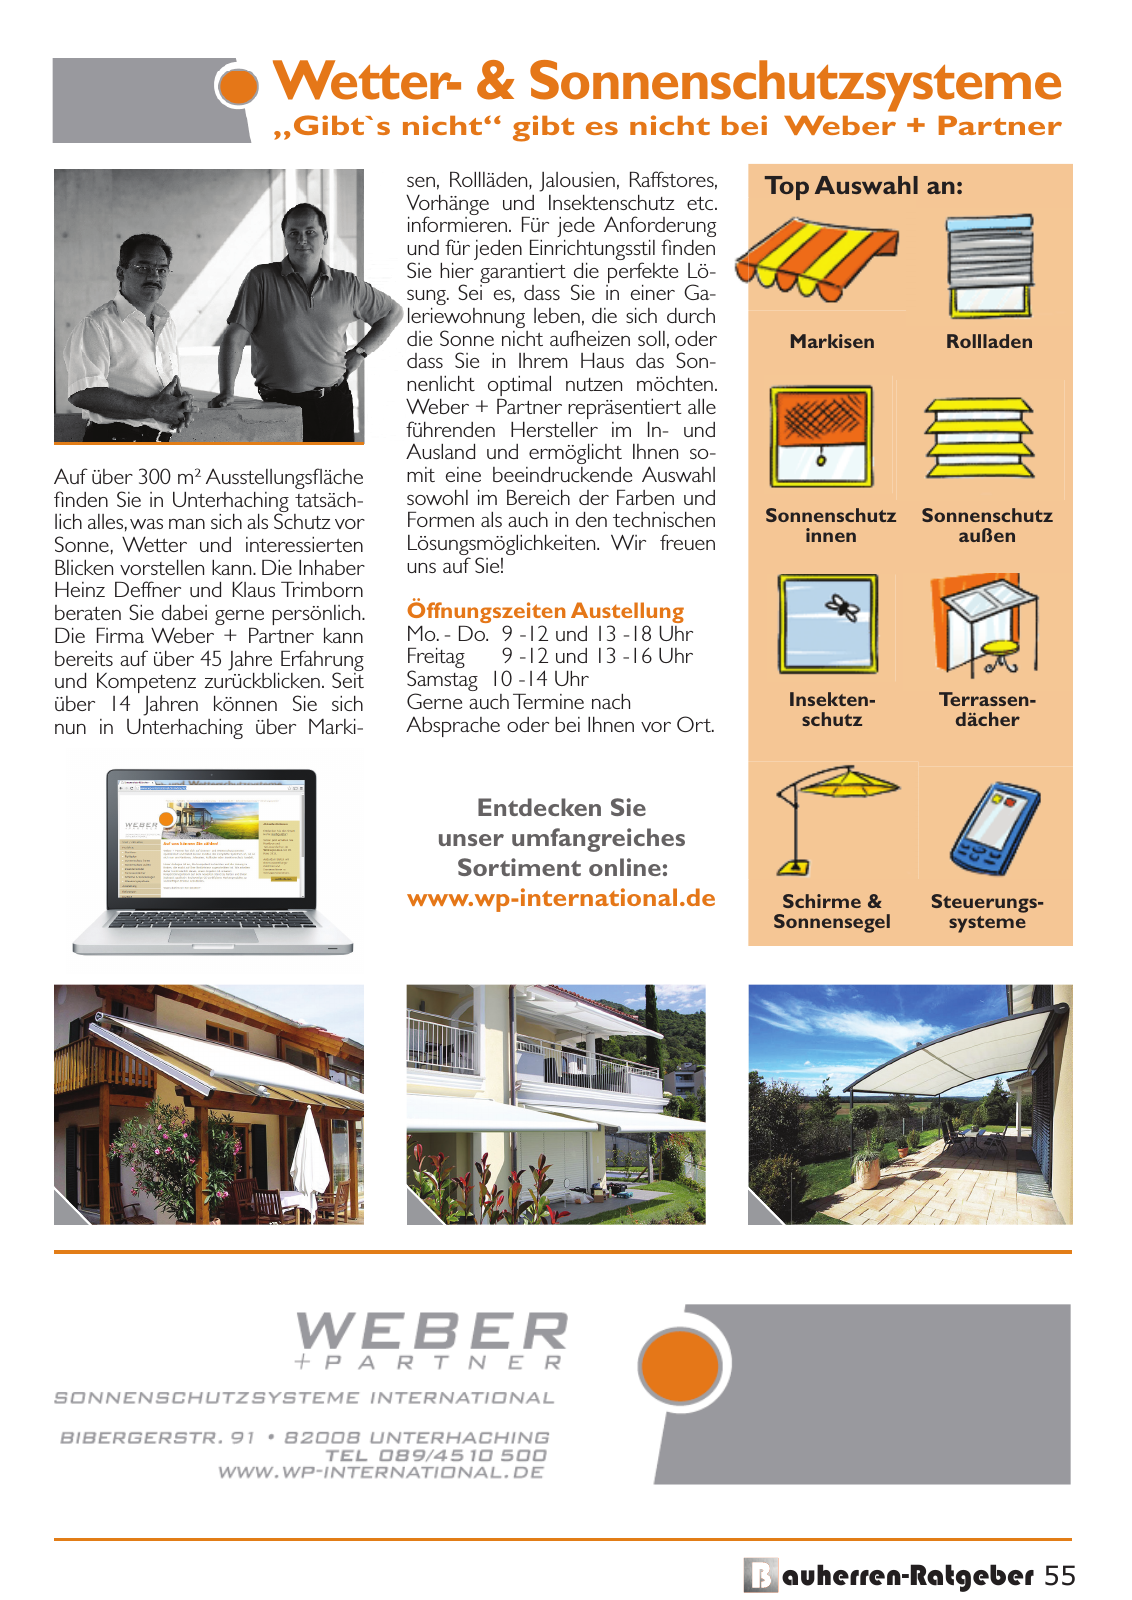 Vorschau Bauherren-Ratgeber 2015 2016 Seite 55